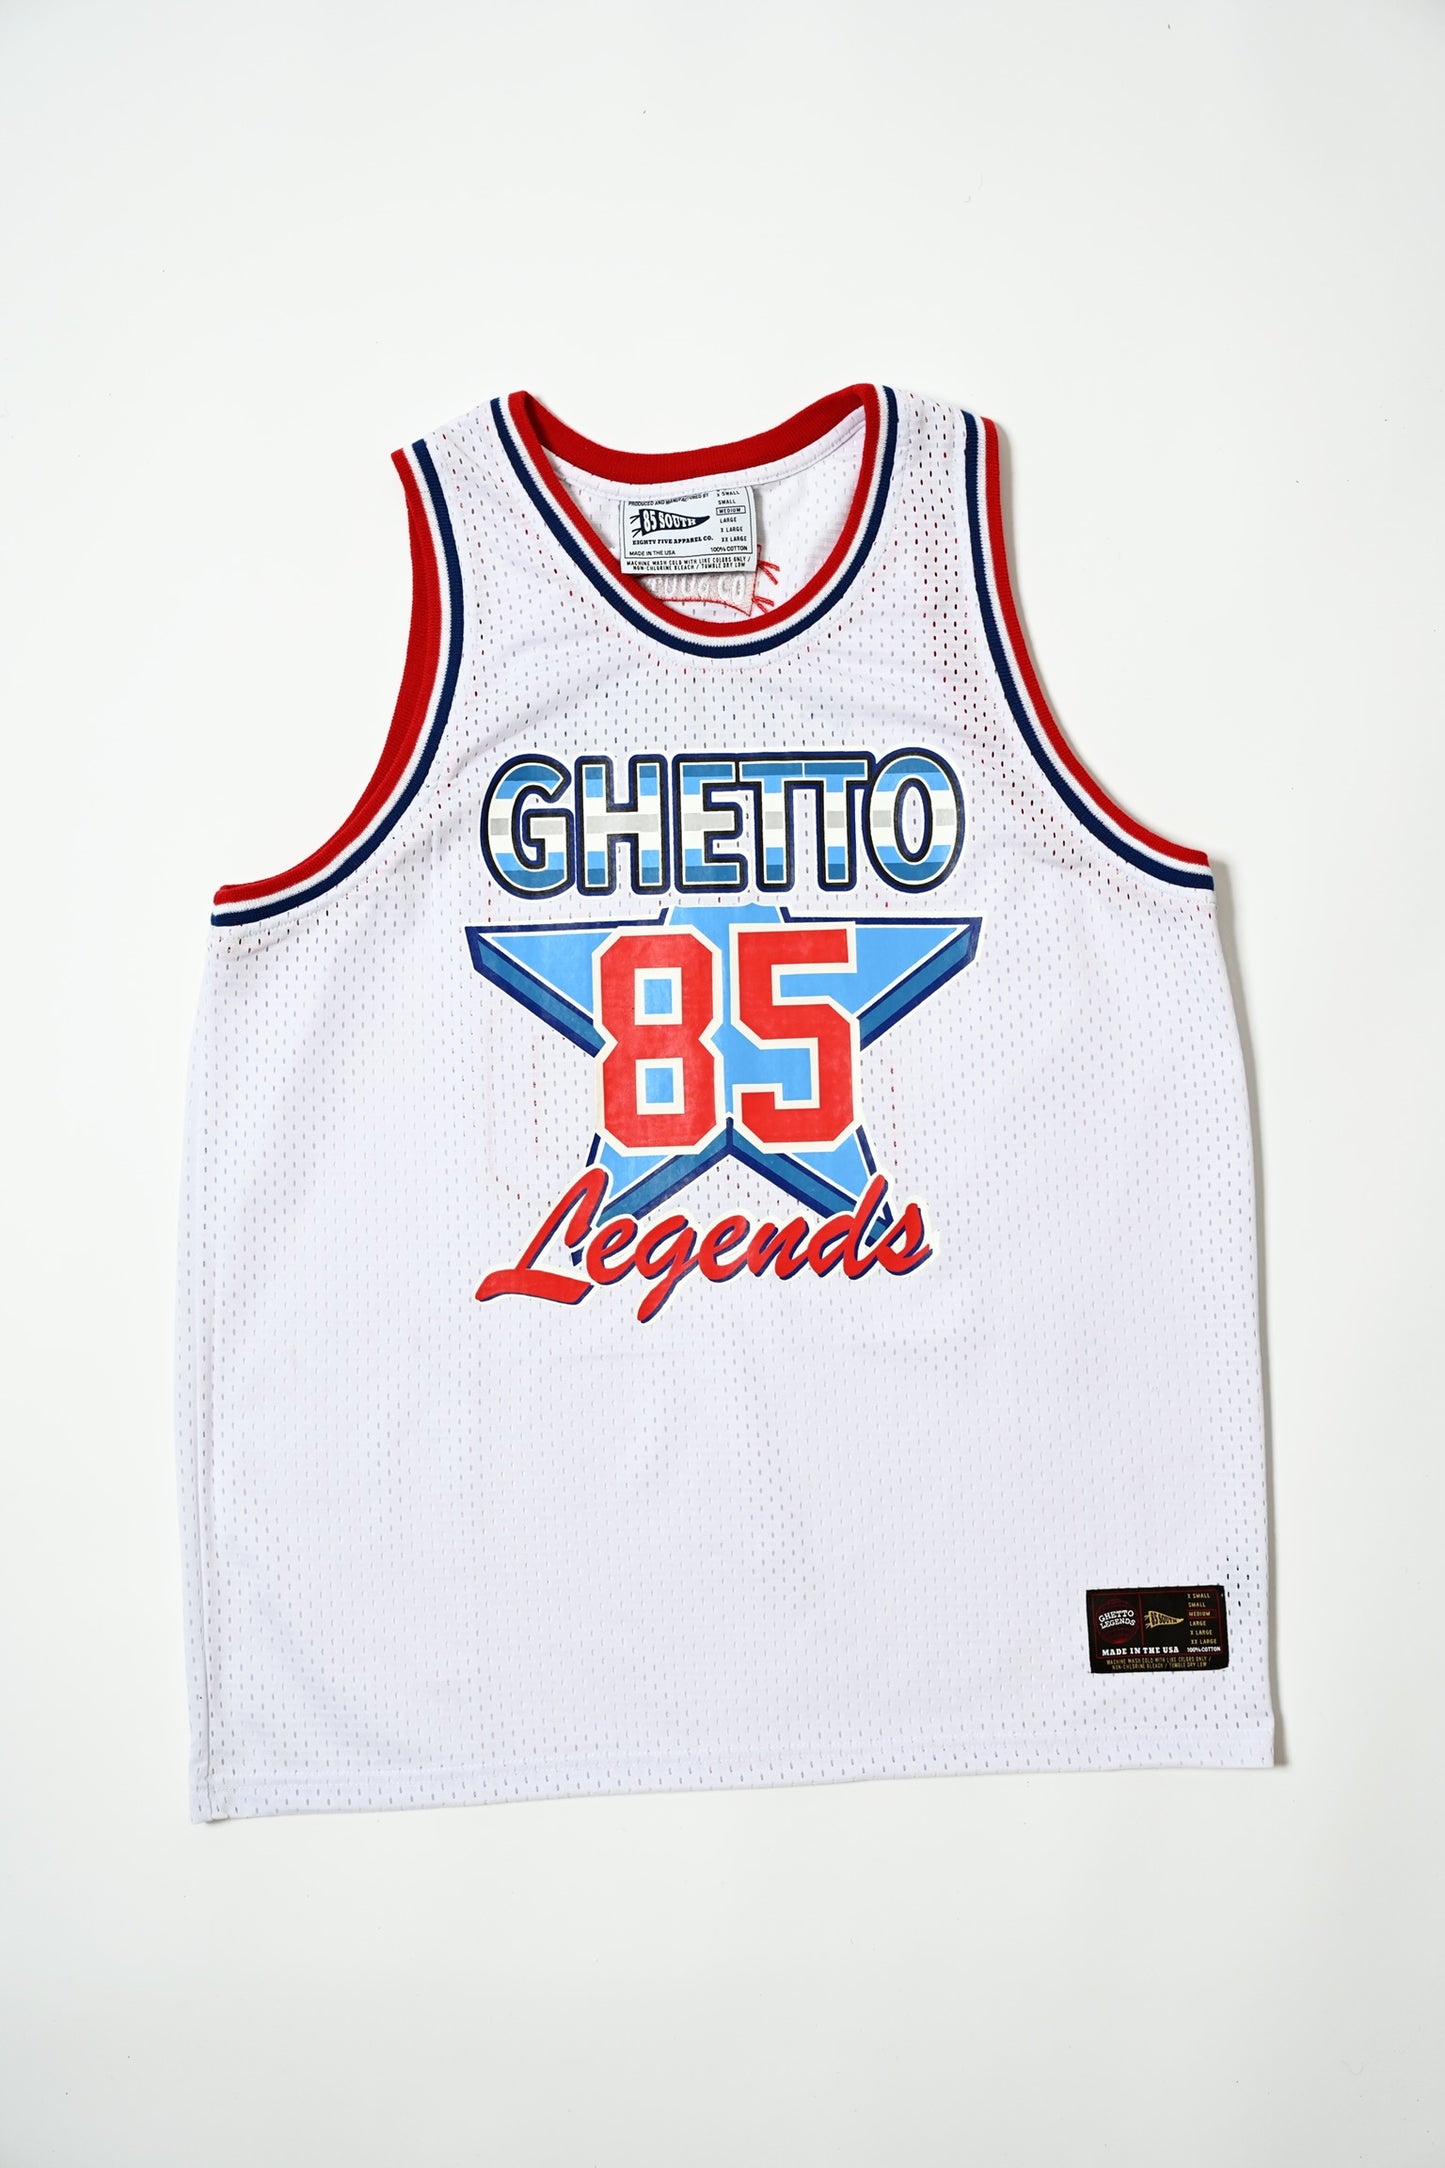 Ghetto Legend Allstar Basketball Jersey - White